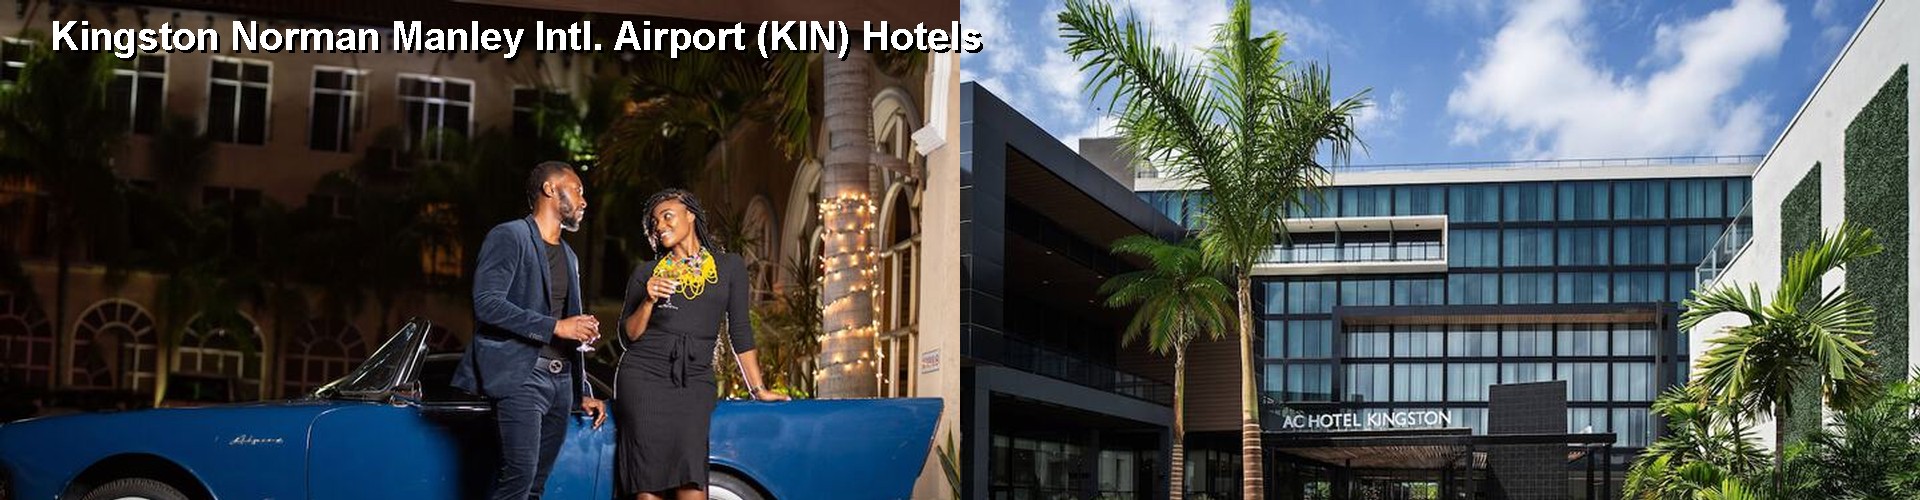 5 Best Hotels near Kingston Norman Manley Intl. Airport (KIN)